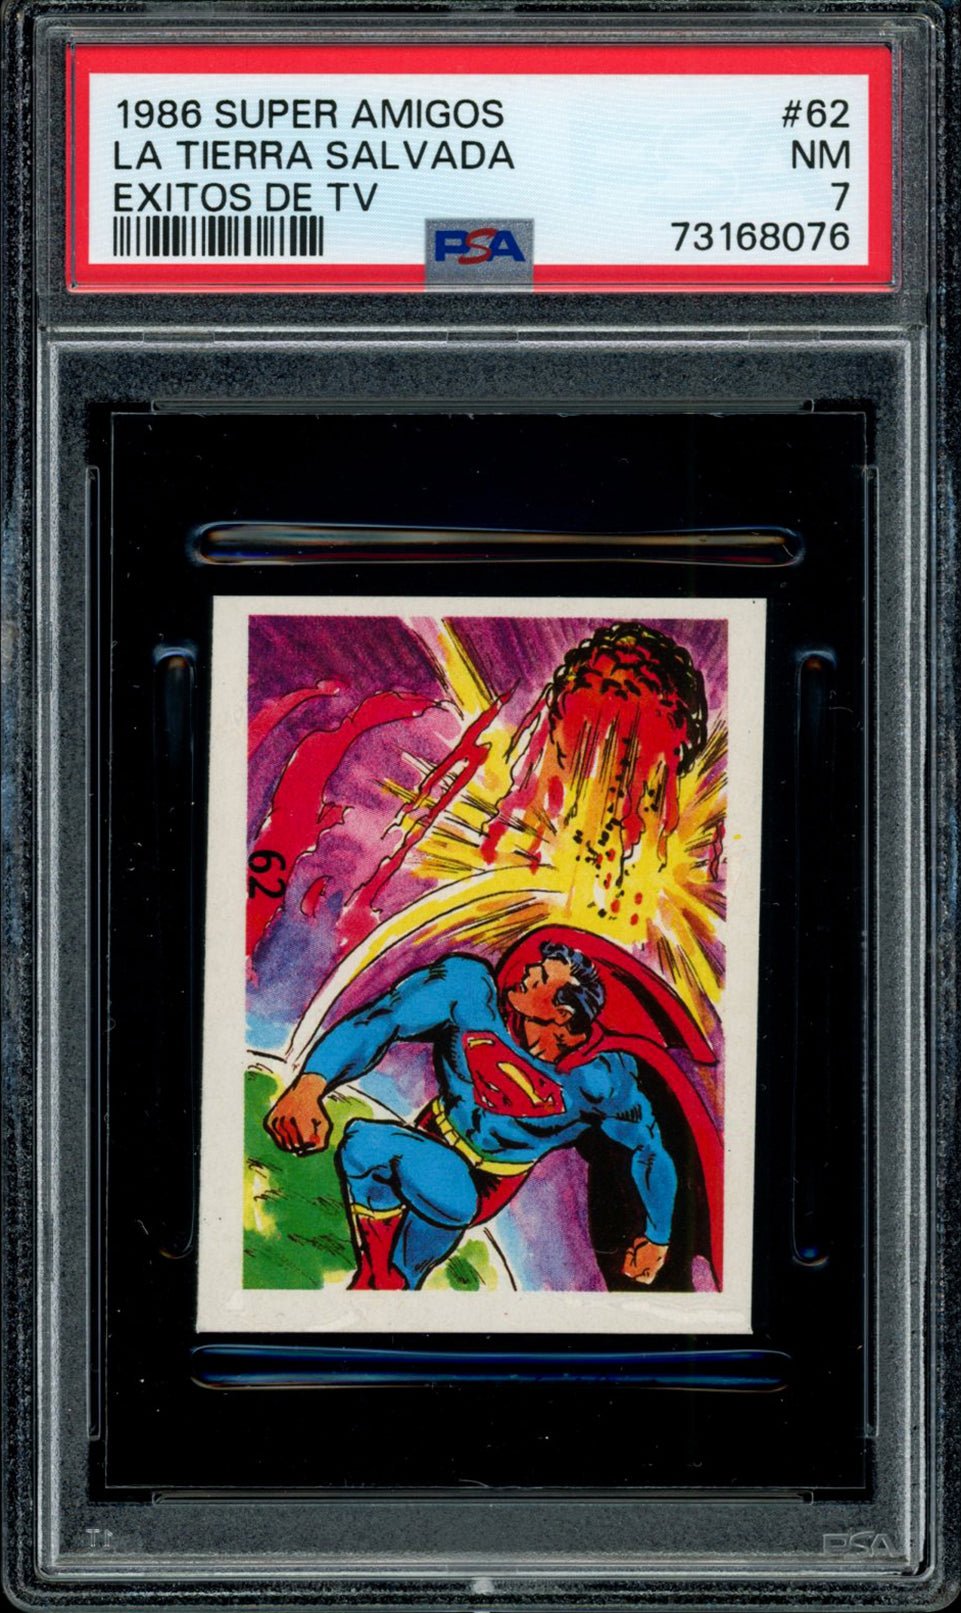 SUPERMAN PSA 7 1986 Reyauca Super Amigos Exitos de TV #62 C2 DC Comics Base Graded Cards - Hobby Gems